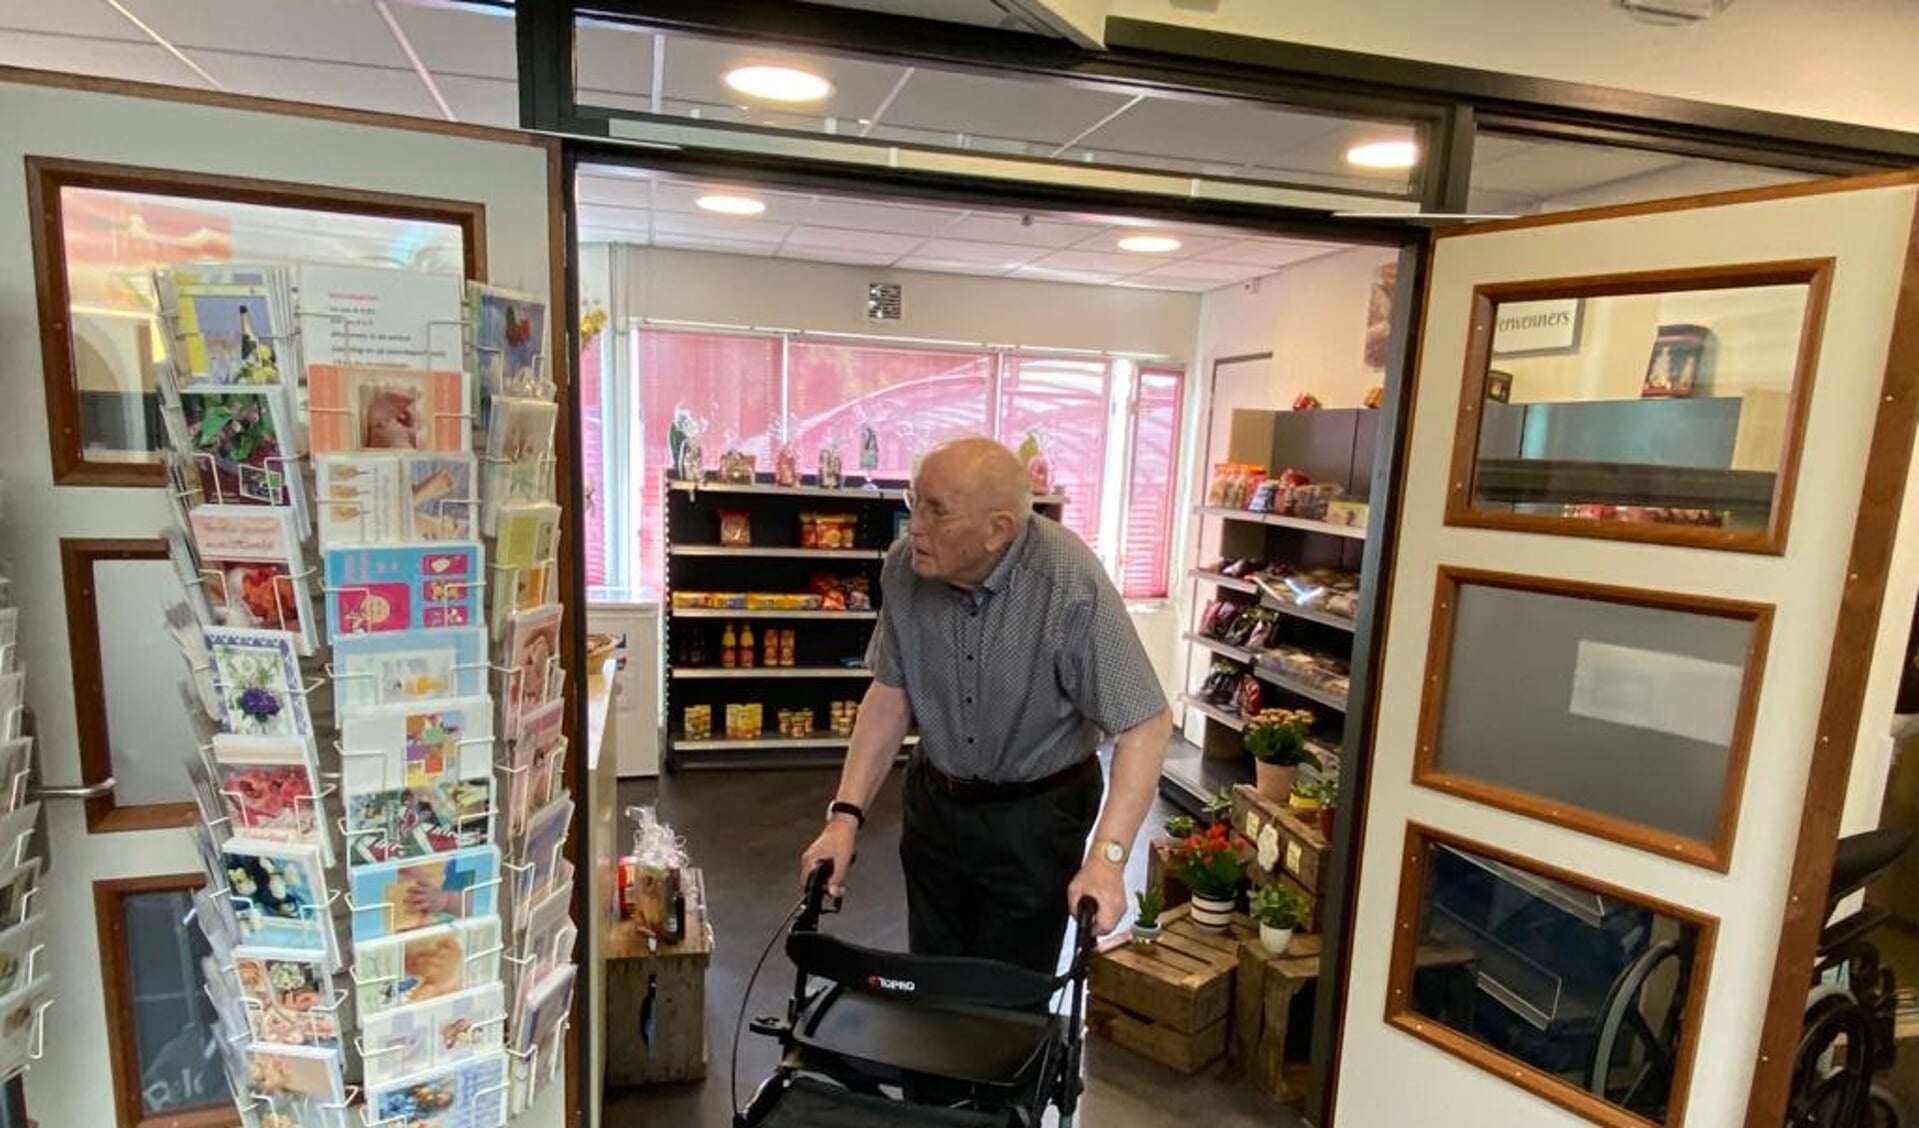 • Meneer Zwiers kwam als een van de eerste bewoners van zorgcentrum De Waard een kijkje nemen in de nieuwe minimarkt.